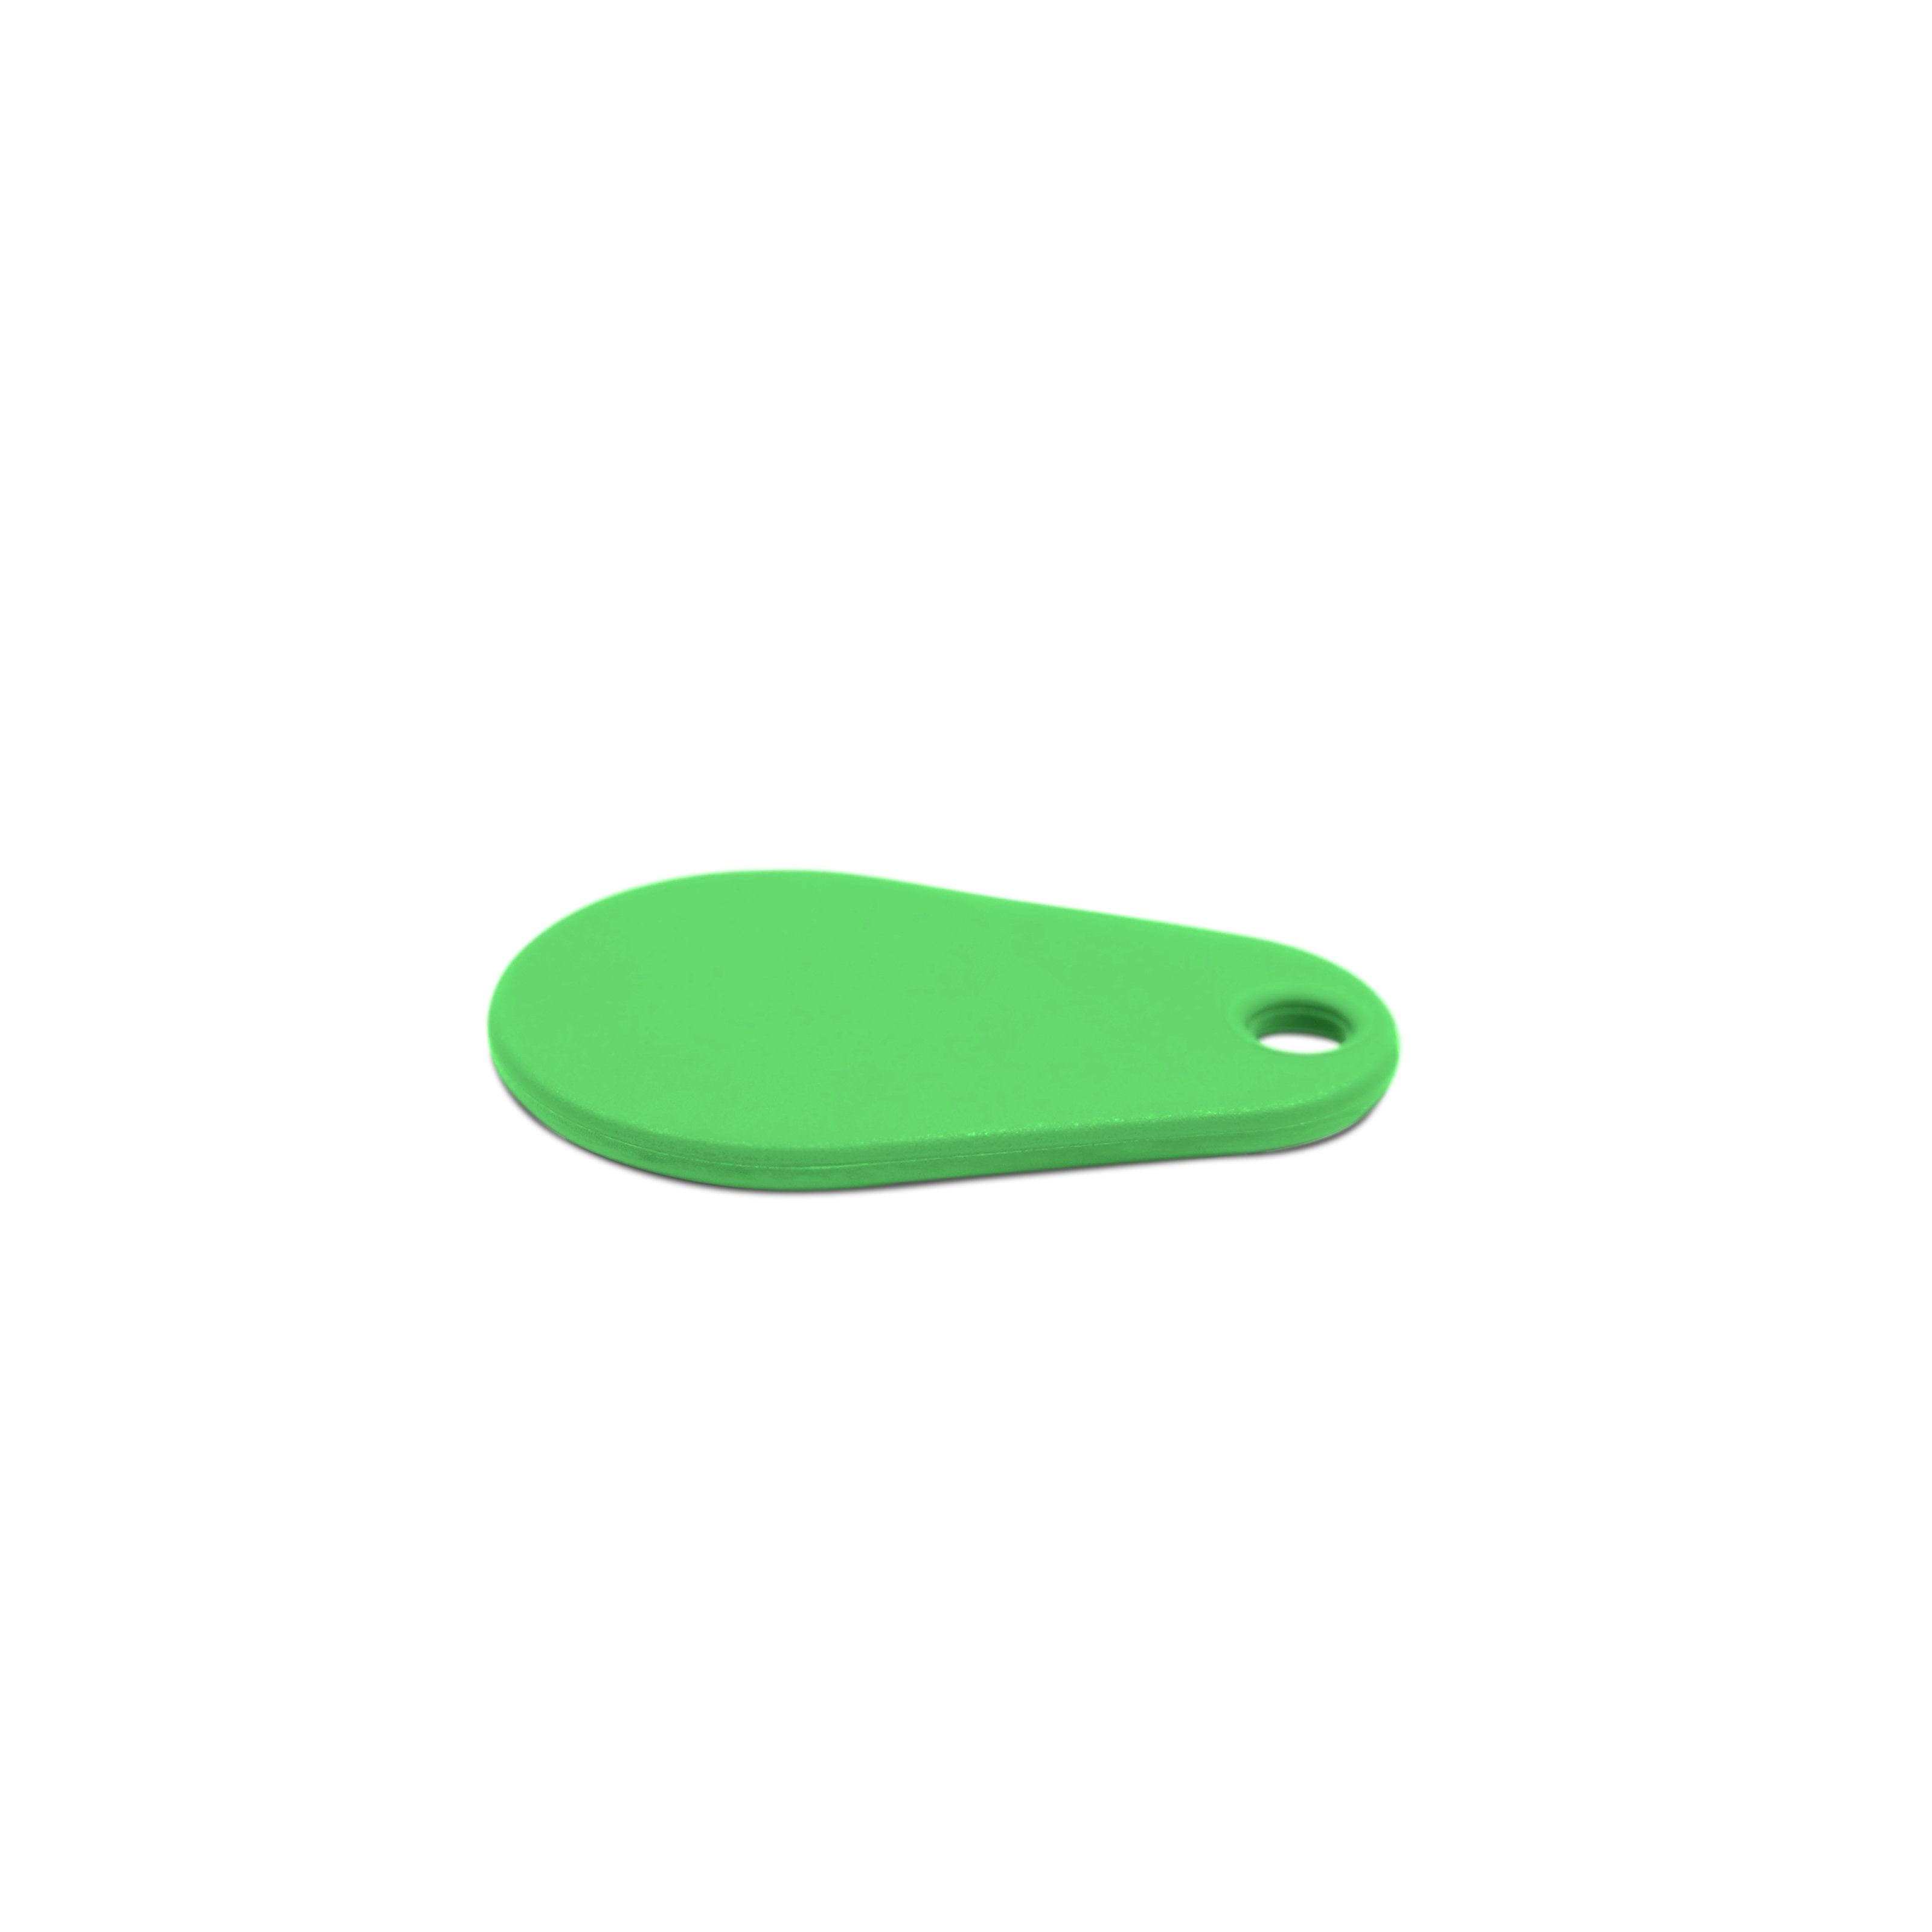 Liegender NFC Schlüsselanhänger in grün aus Polyamid